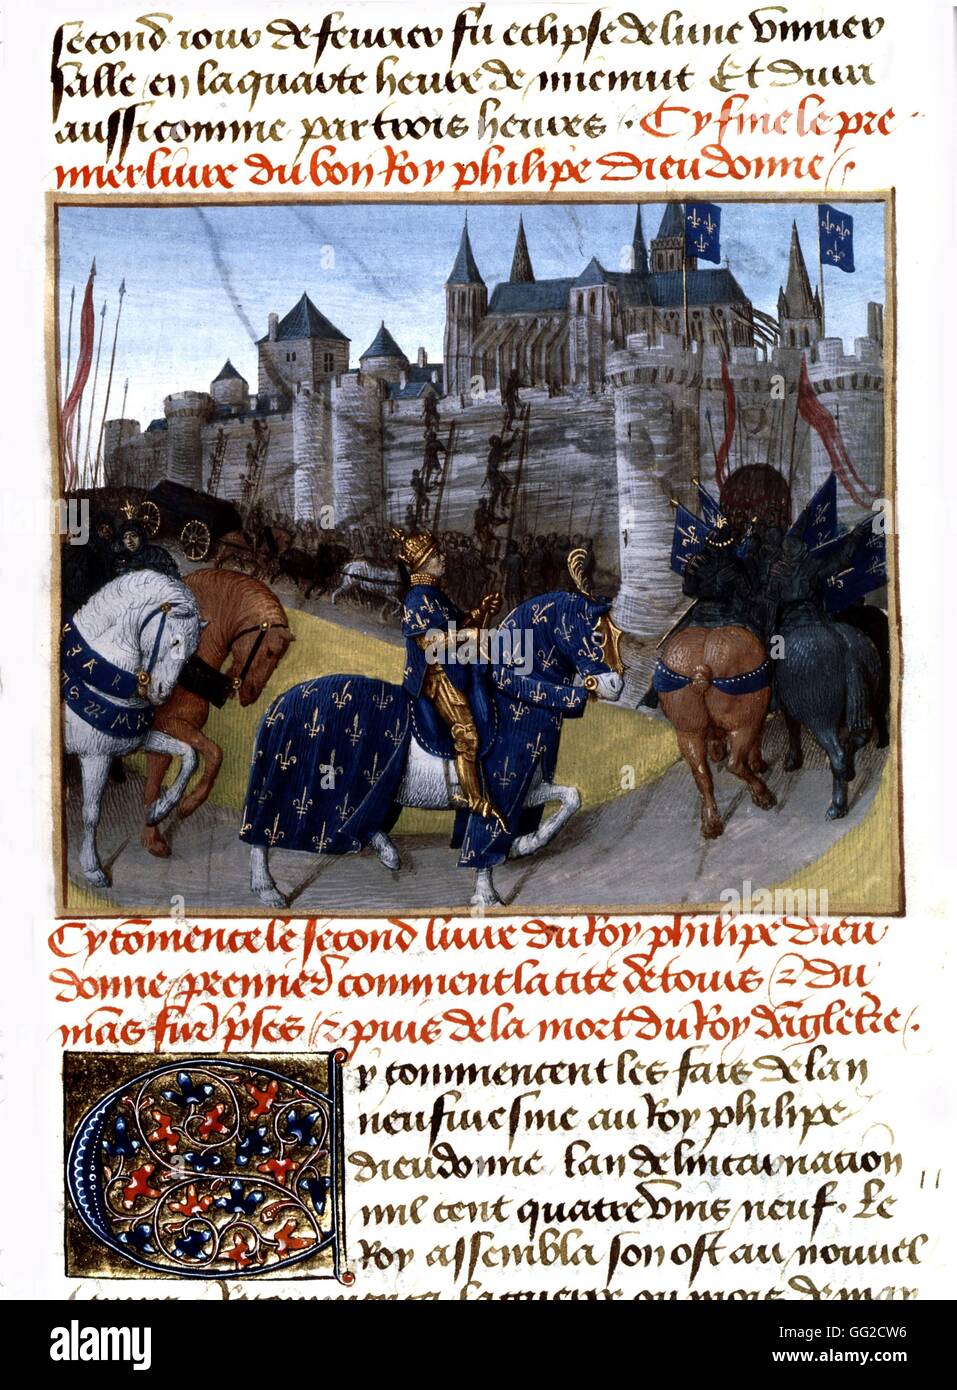 Chroniken von Saint-Denis Miniatur von Jean Fouquet. 1189, Erfassung von Touren durch Philip Auguste (1165-1223), König von Frankreich (1180-1223) 15. Jahrhundert Frankreich Stockfoto